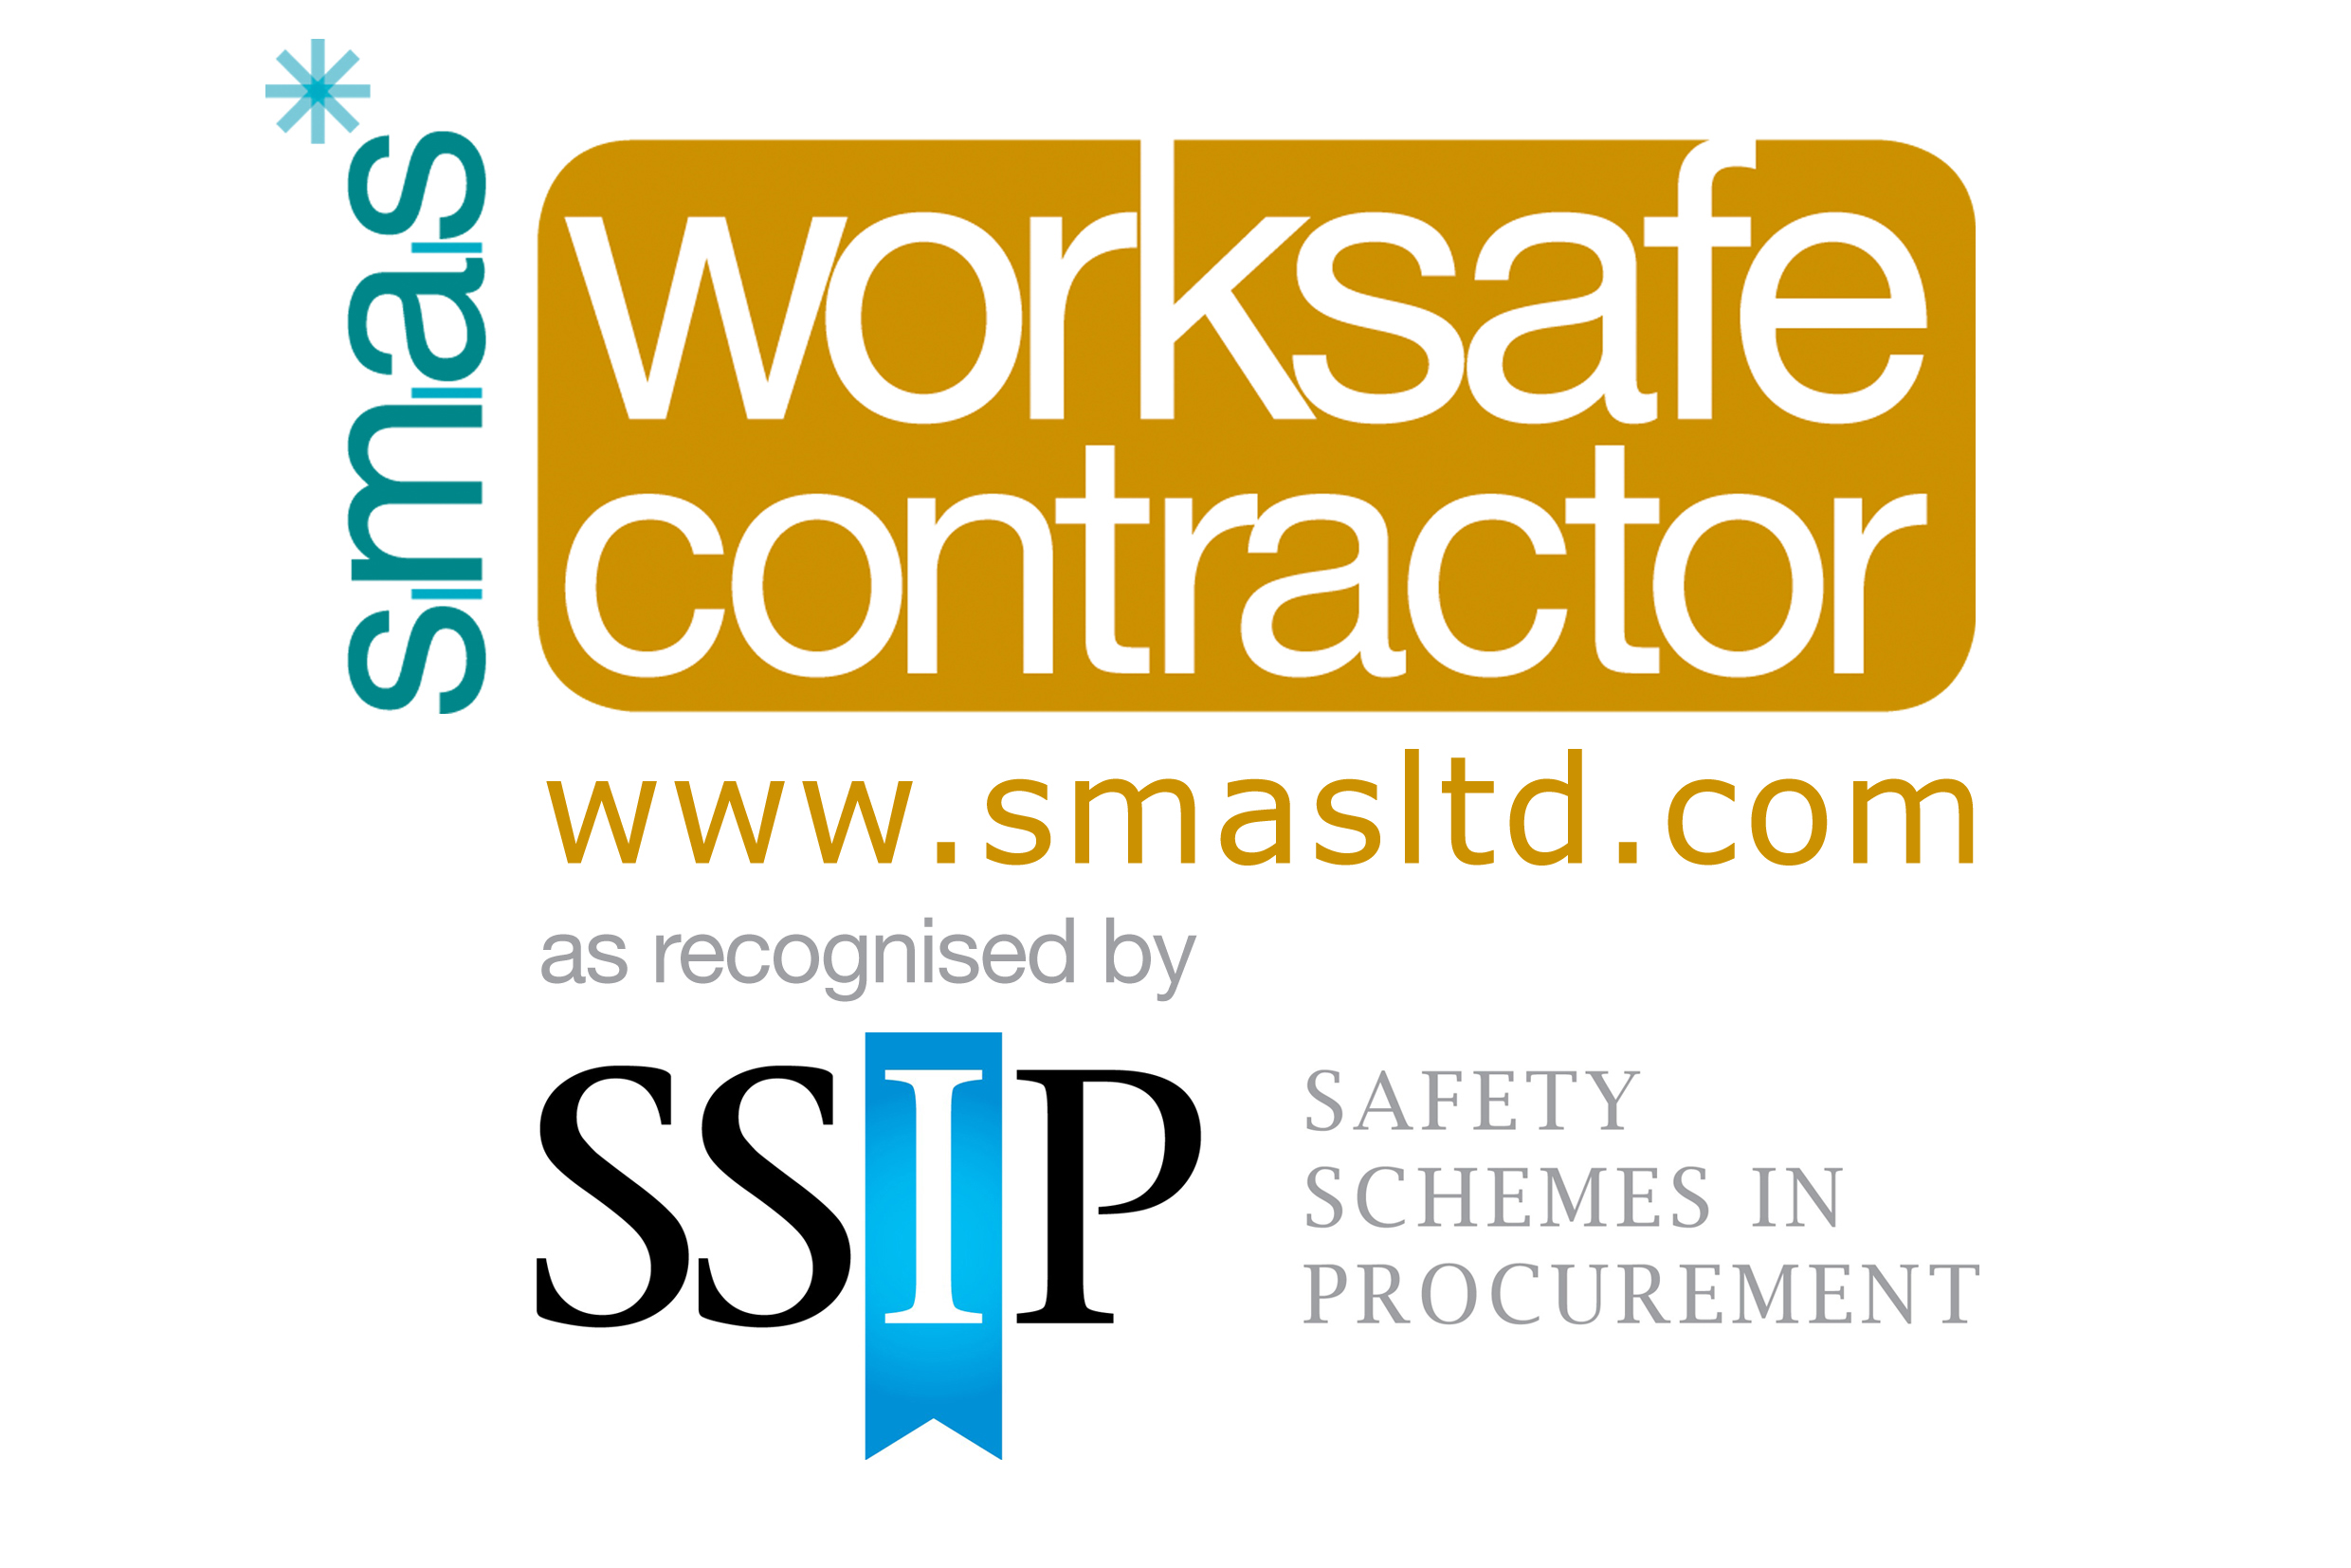 WSC_contractor-SSIP_web.jpg